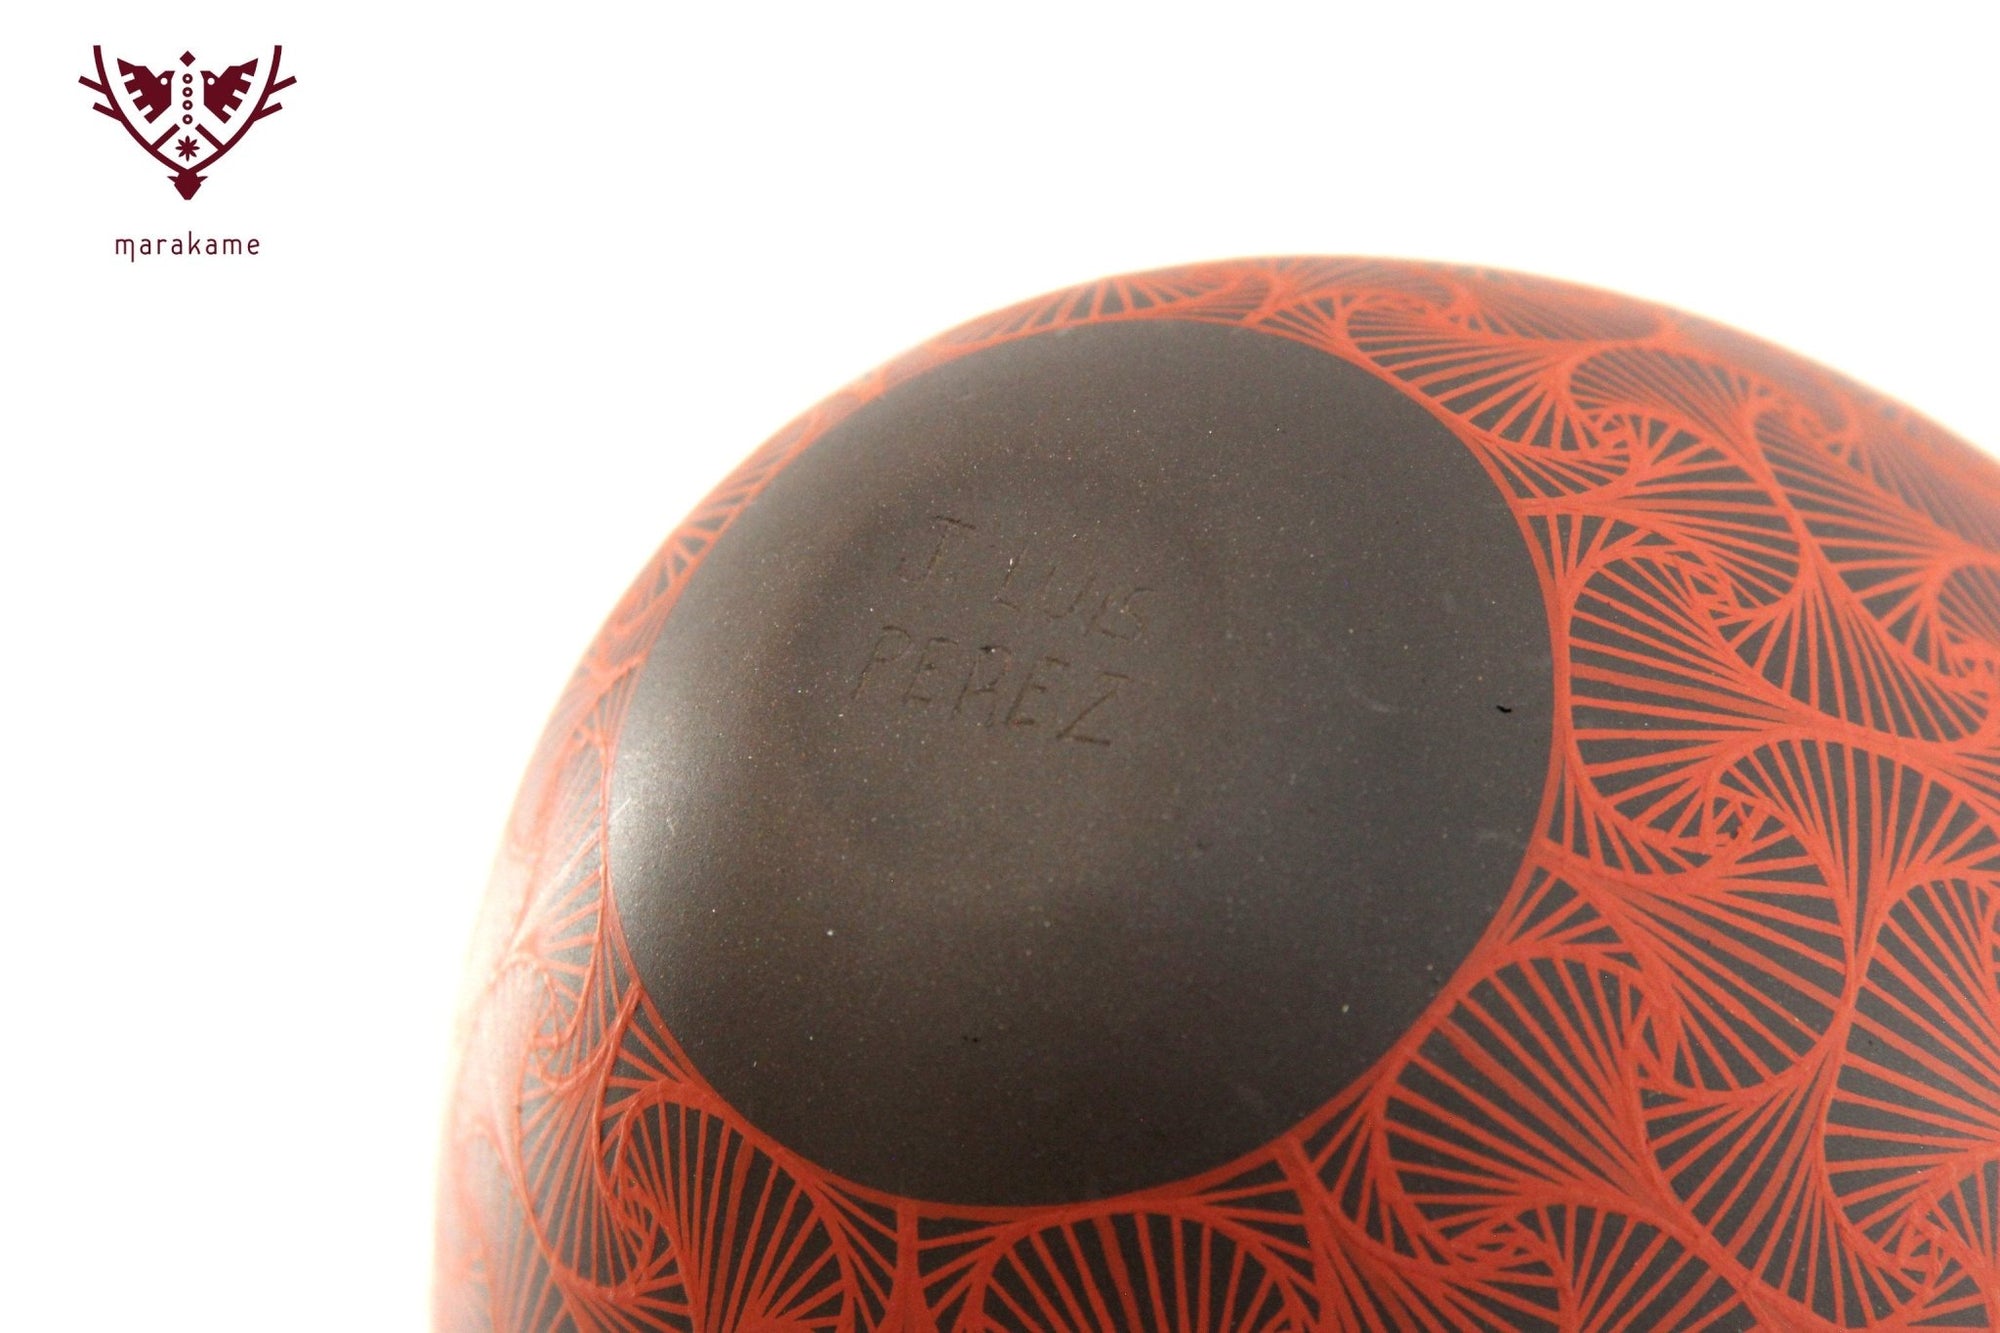 Mata Ortiz Keramik – Mittleres Fächerstück – Huichol Art – Marakame